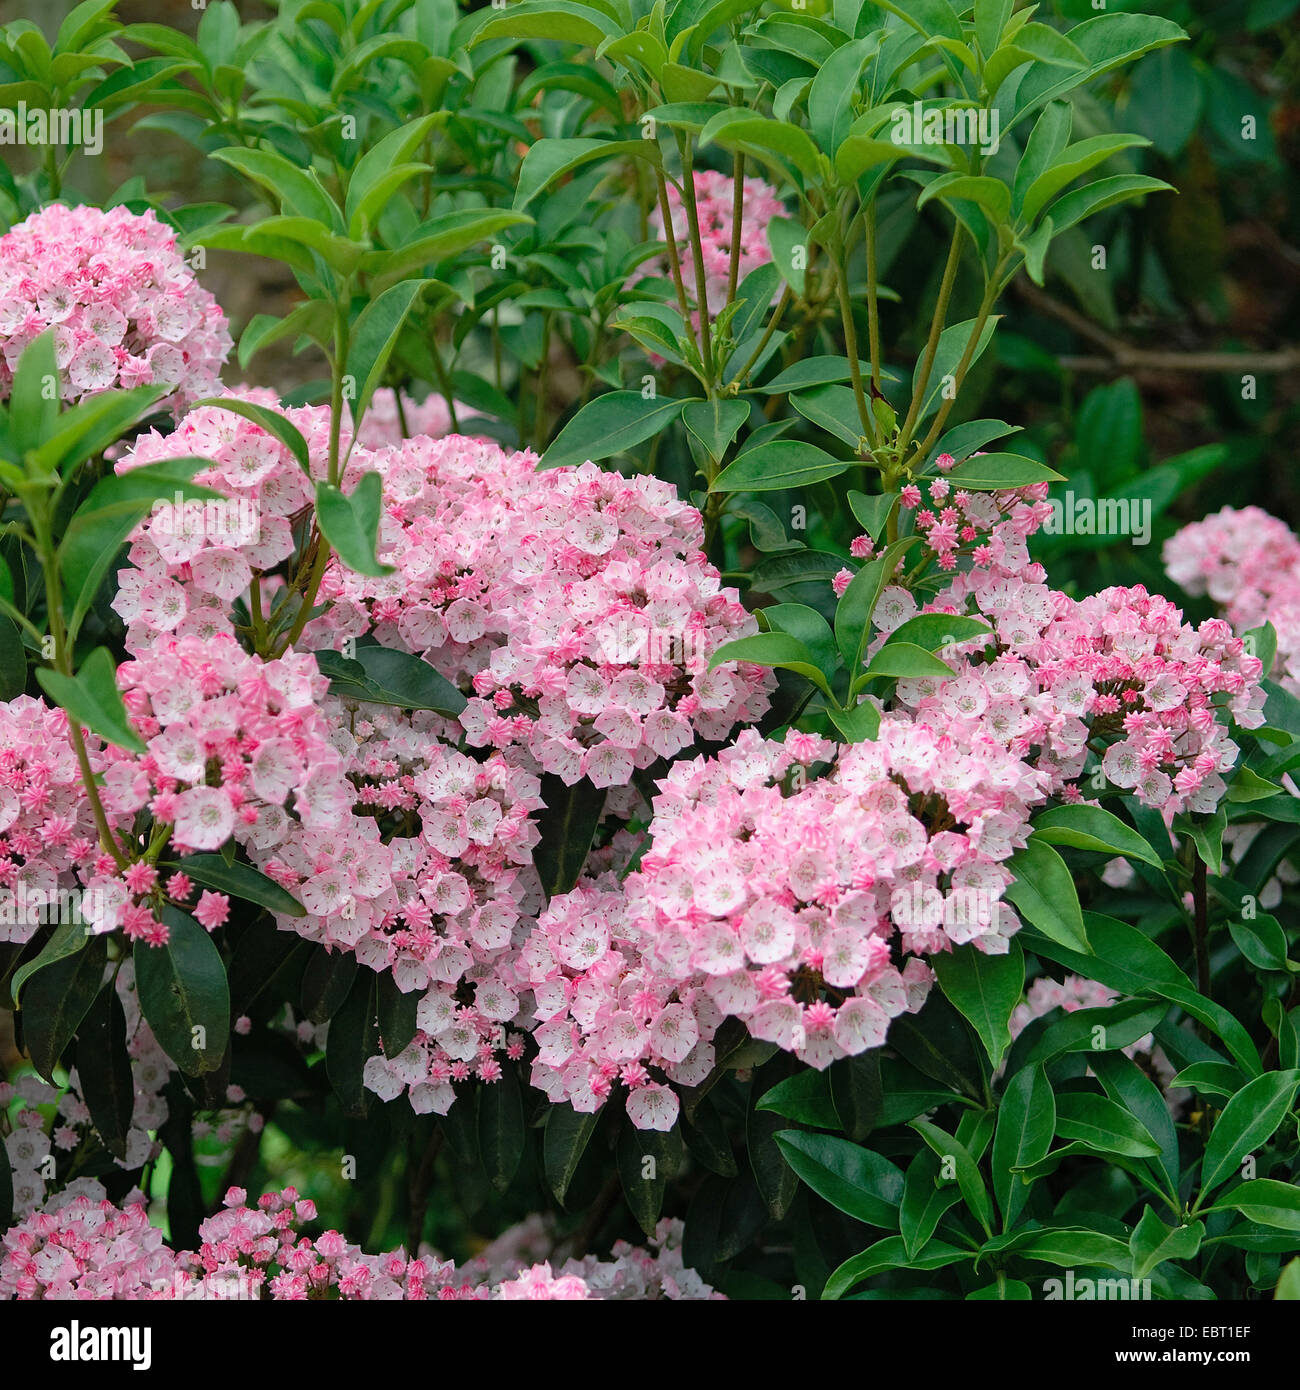 El laurel de montaña (Kalmia latifolia "alegre", Kalmia latifolia alegre), cultivar alegre, floreciendo Foto de stock